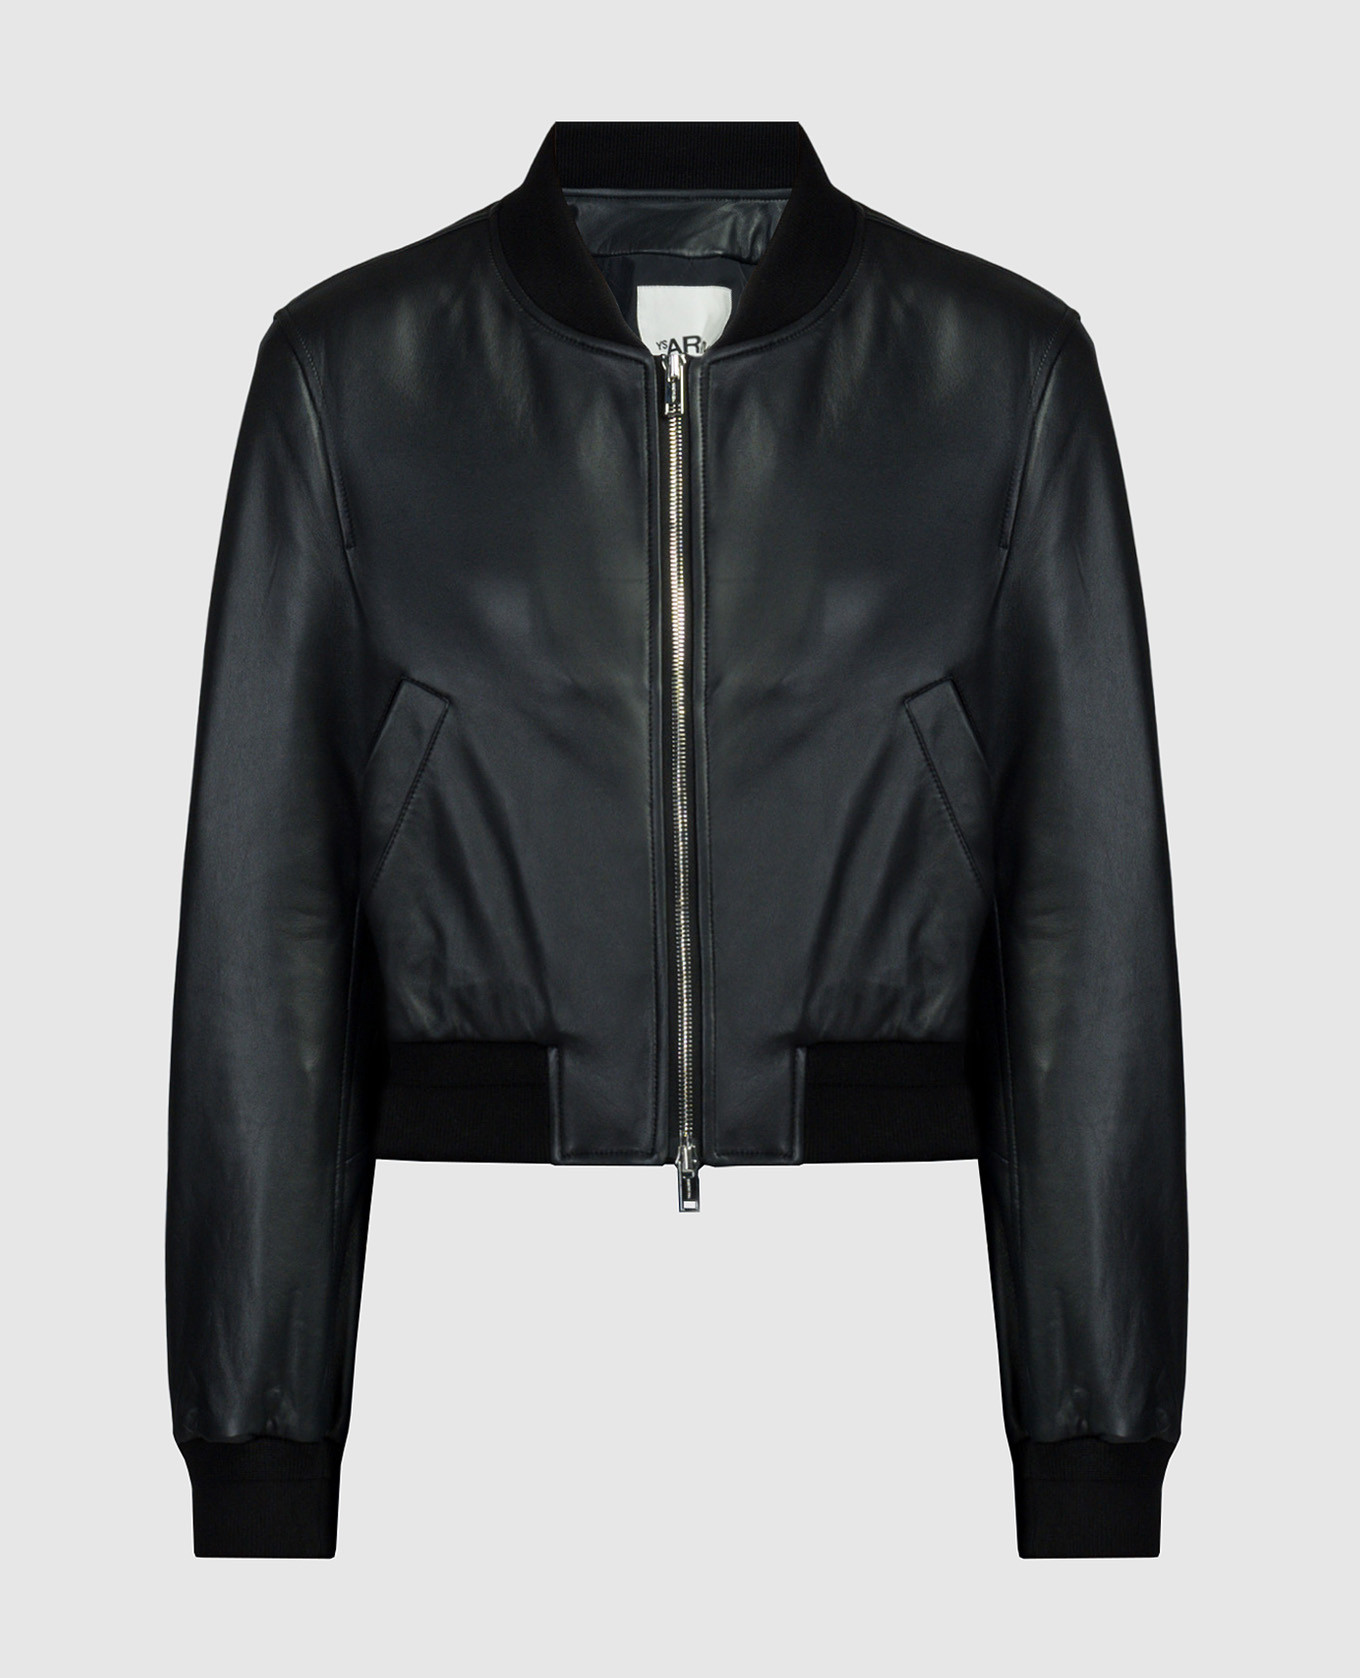 Black leather bomber jacket with logo